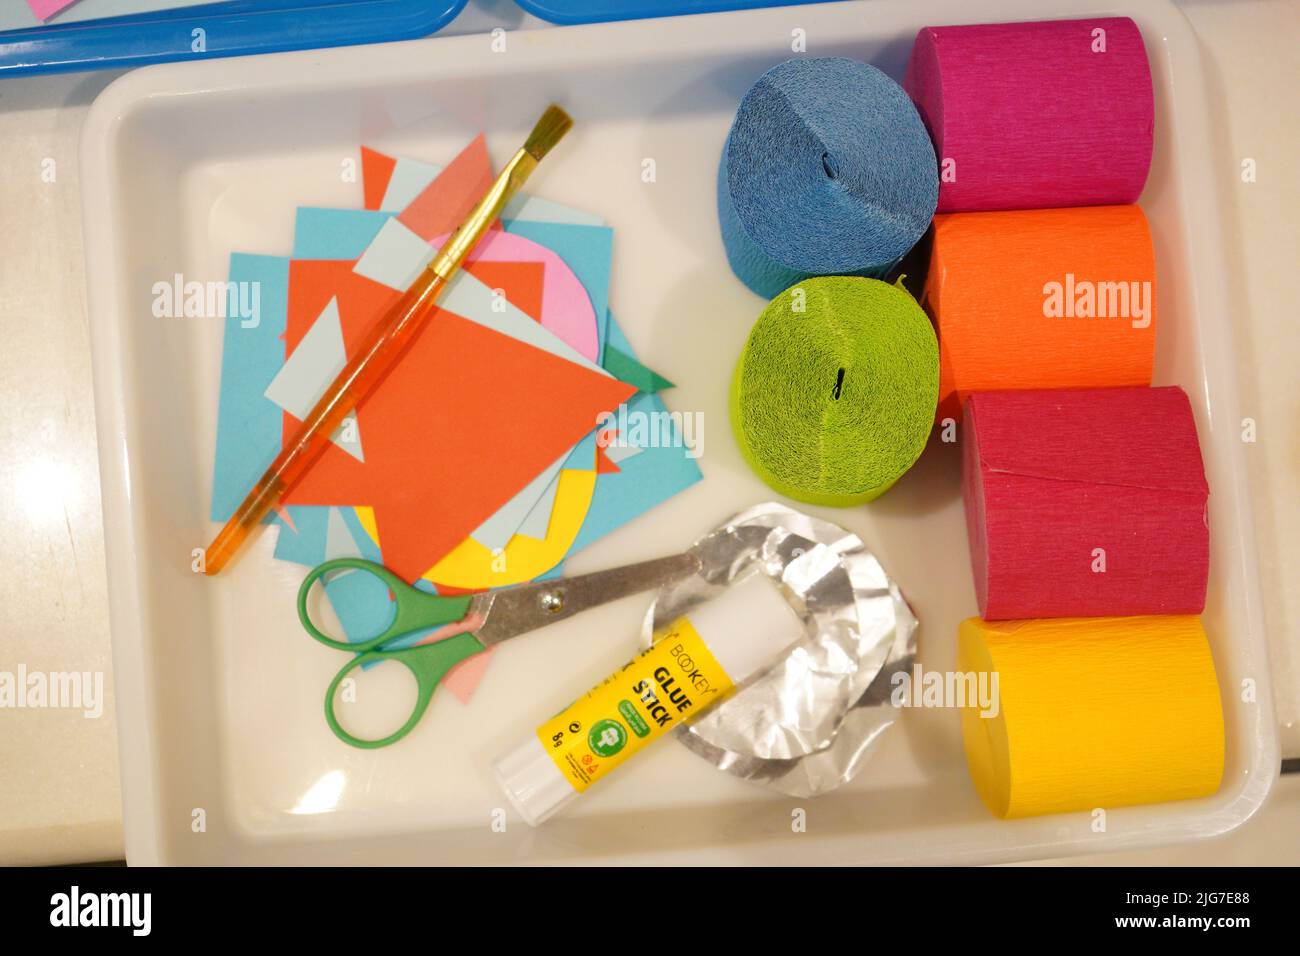 Kids Basteln Kit auf einem weißen versuchen. Tissue Papier, Schere, Kleber, Folie, ein Stück Papier, und ein Pinsel Stockfoto